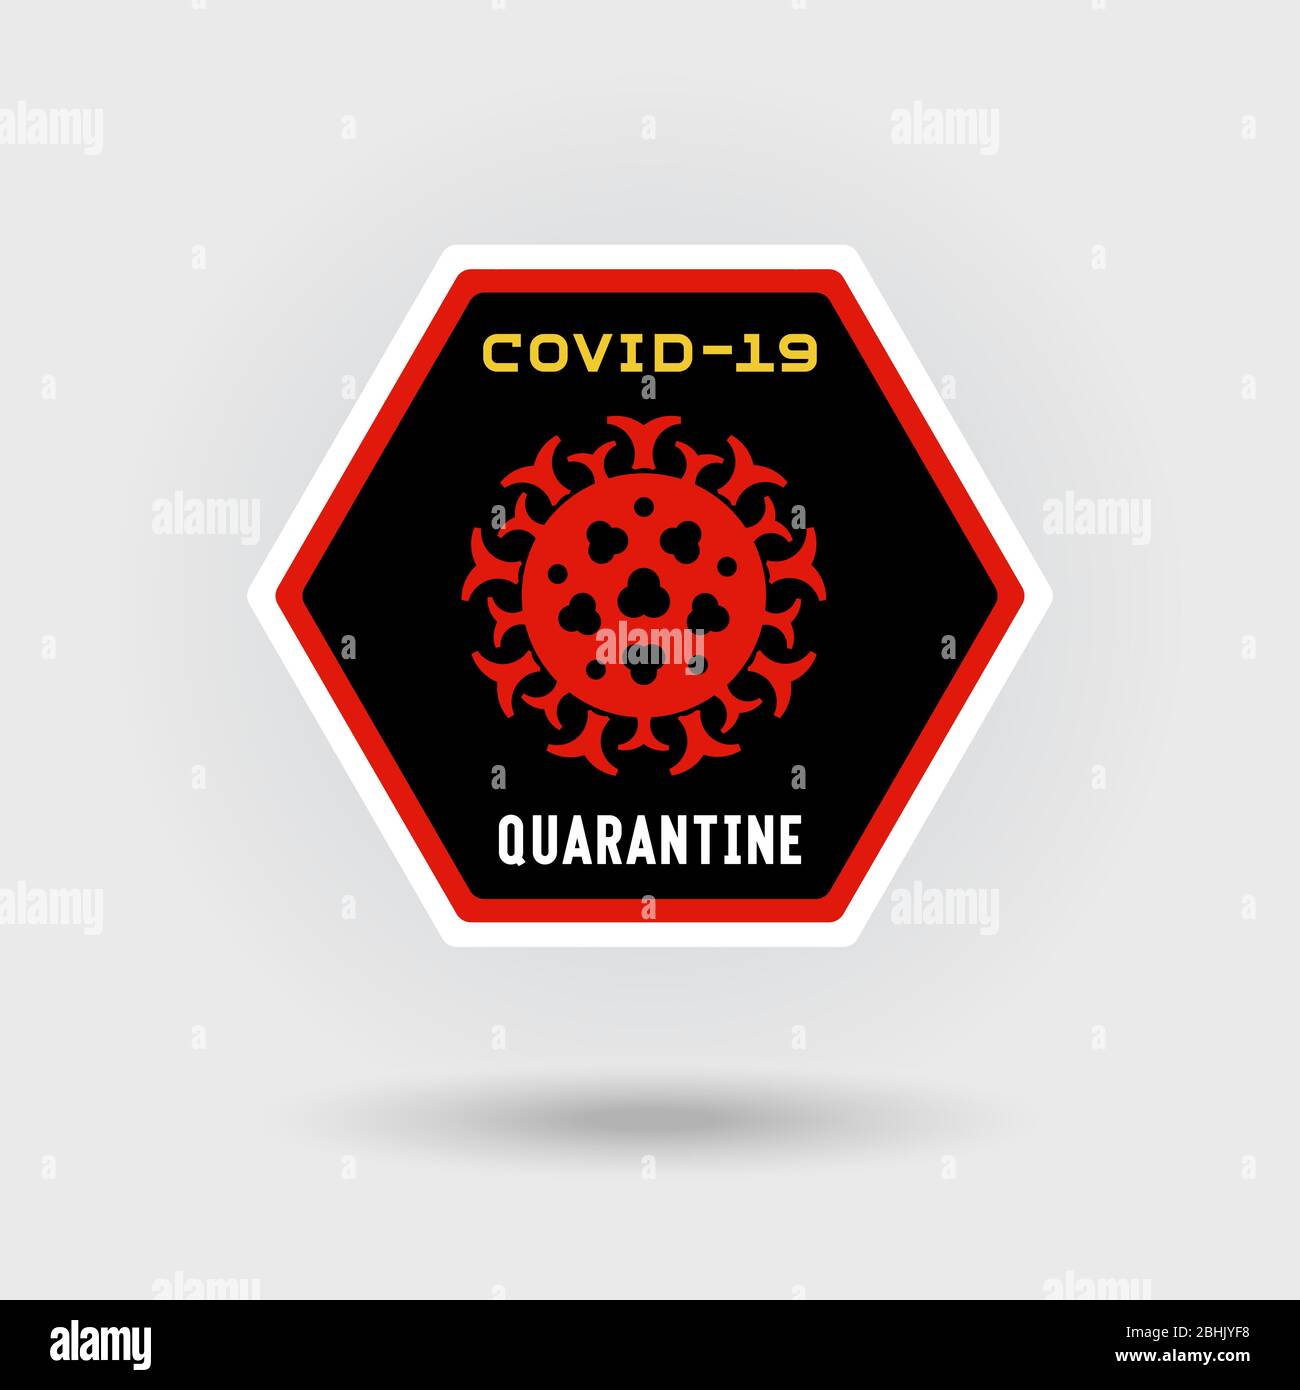 COVID-19 segnale di avvertenza infezione da coronavirus. Include un'icona virus stilizzata. Il messaggio avverte della quarantena. Design esagonale. Illustrazione Vettoriale